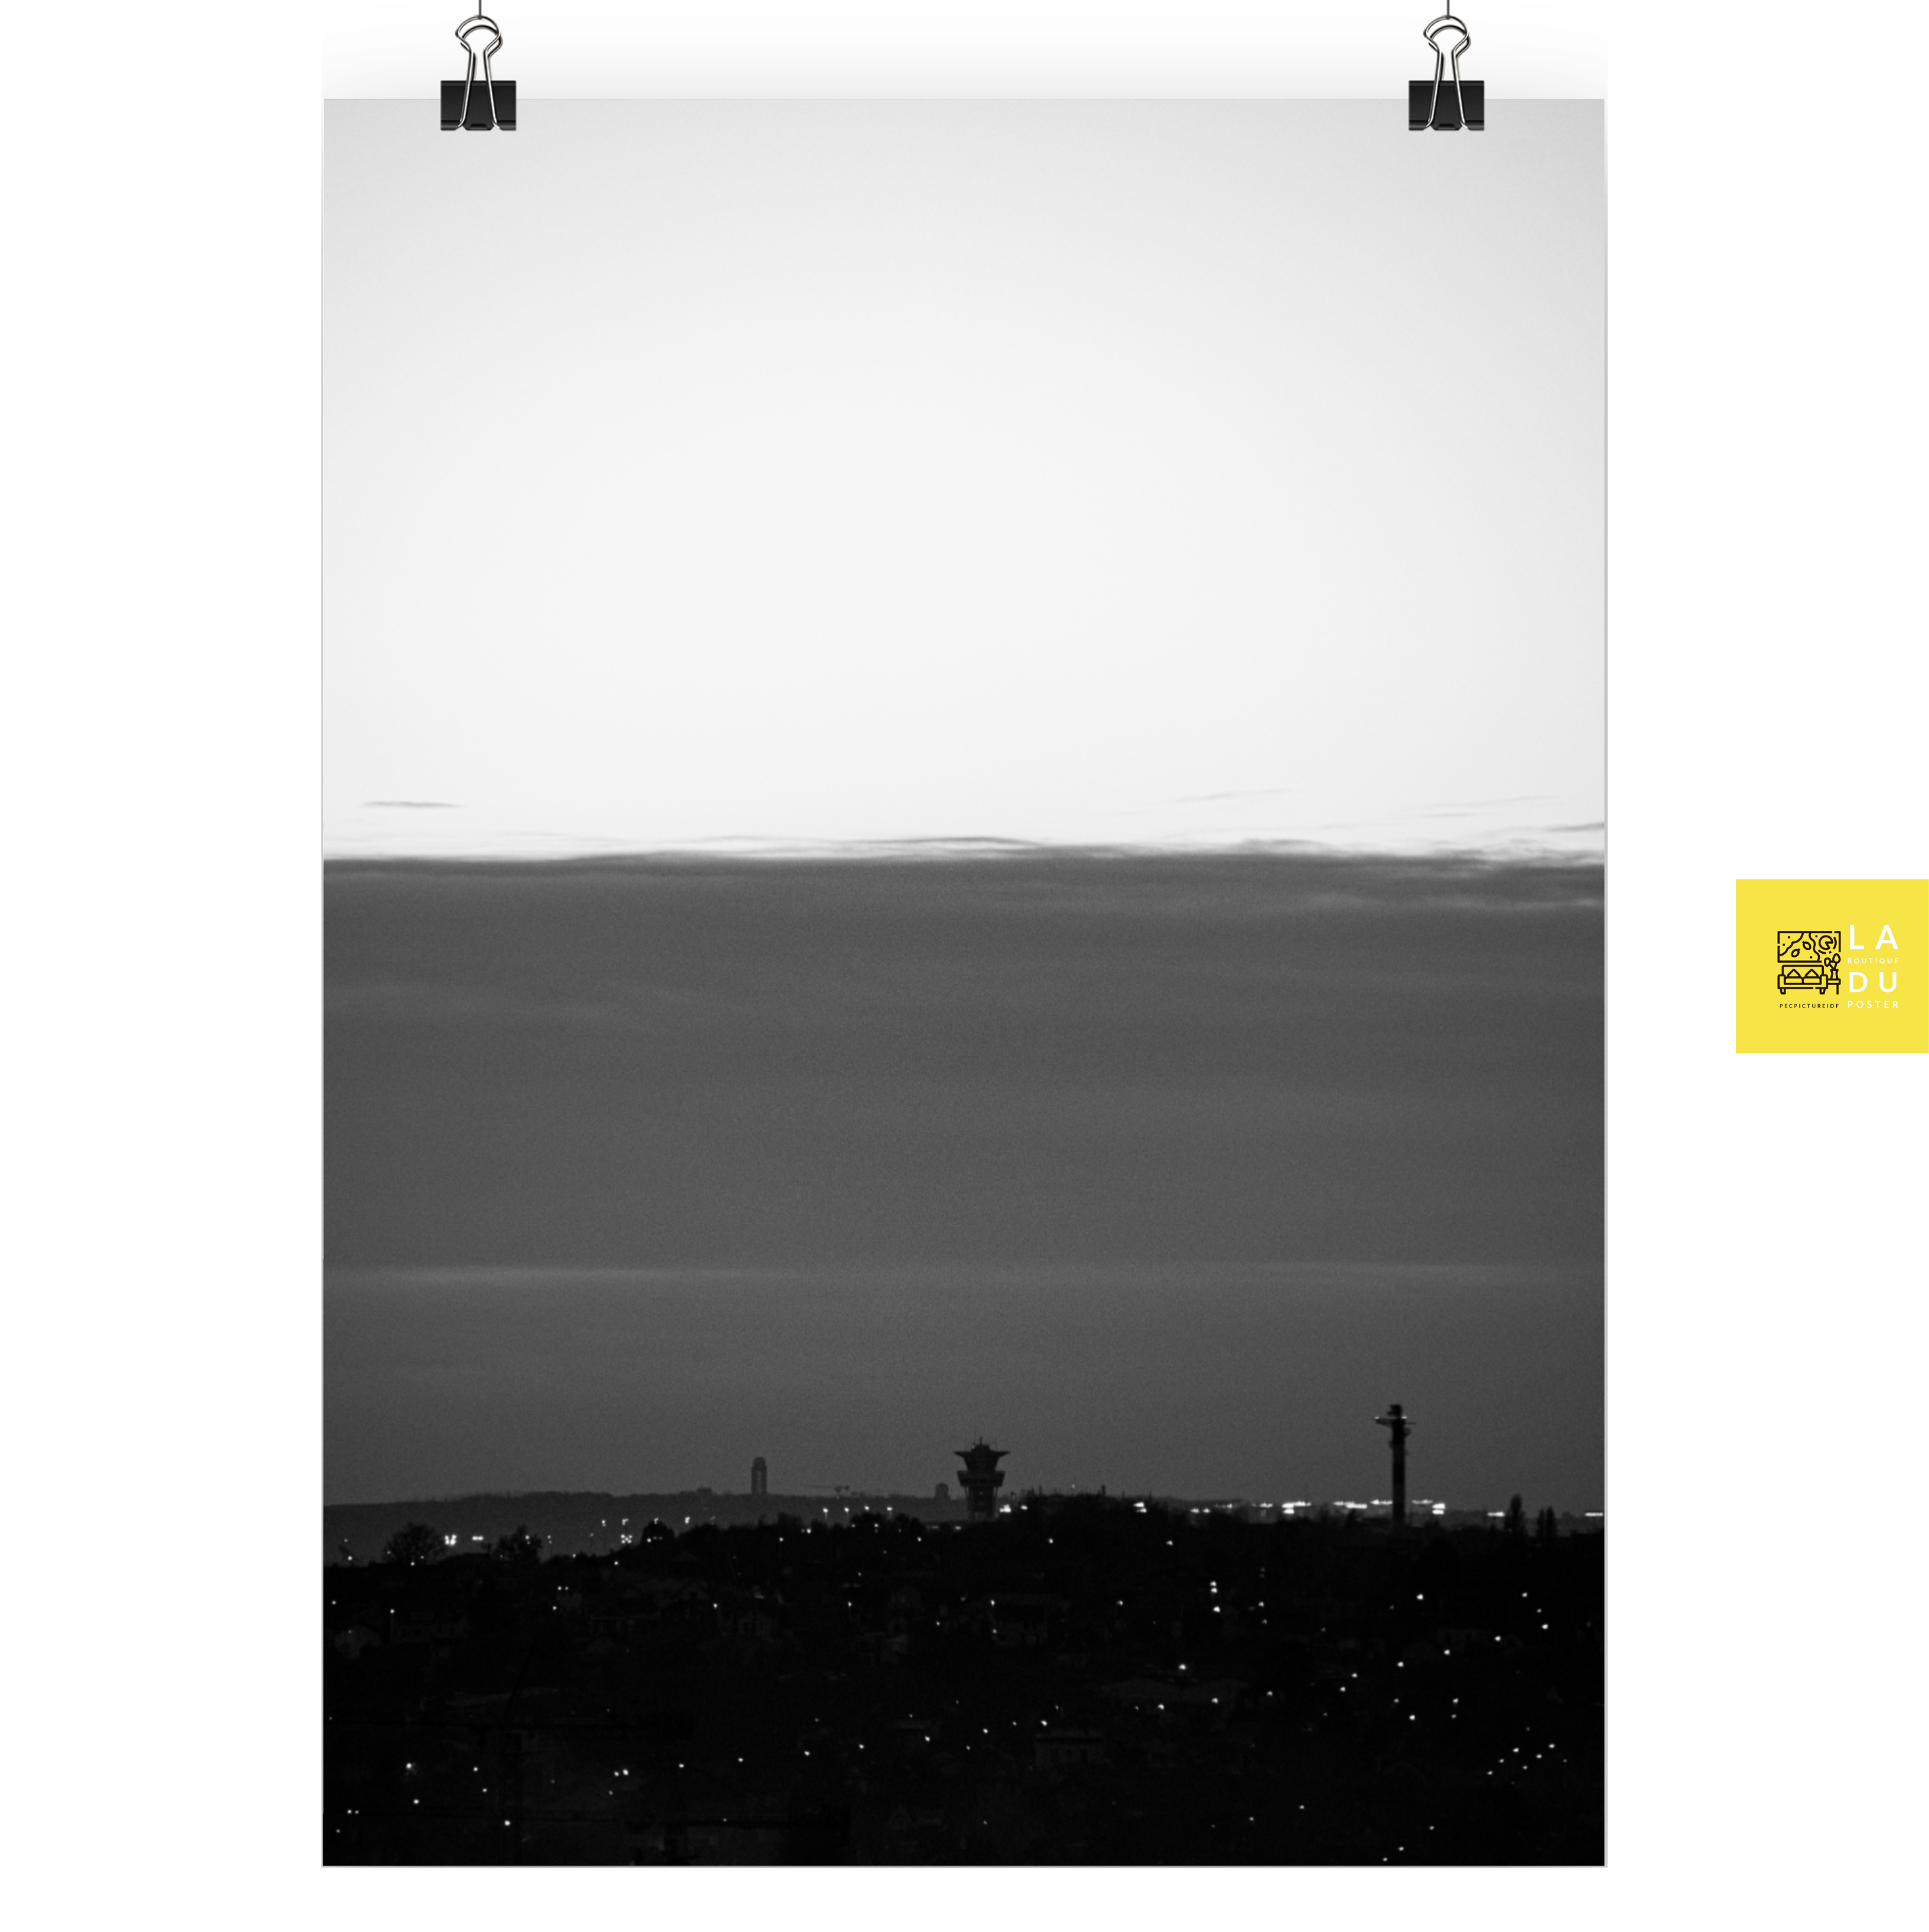 La ville en noir et blanc - Poster - La boutique du poster Français